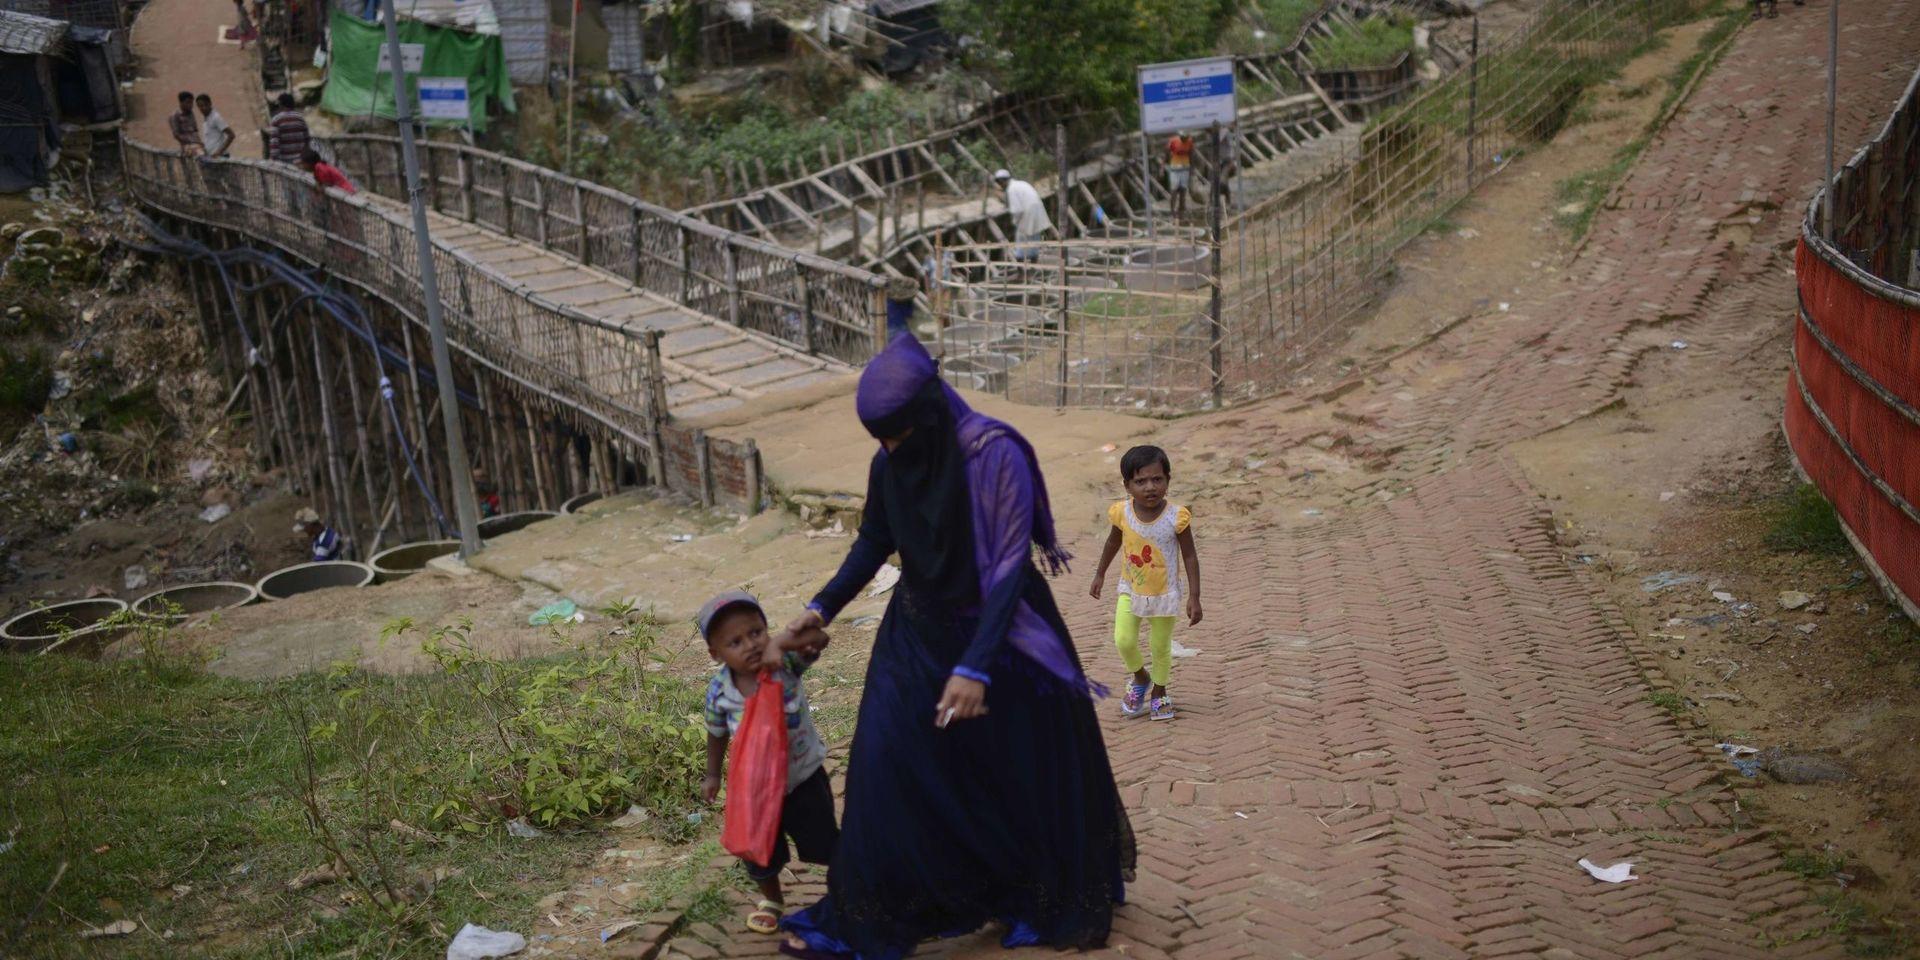 Inga rohingyska flyktingar har anmält sig för att återvända till Myanmar.